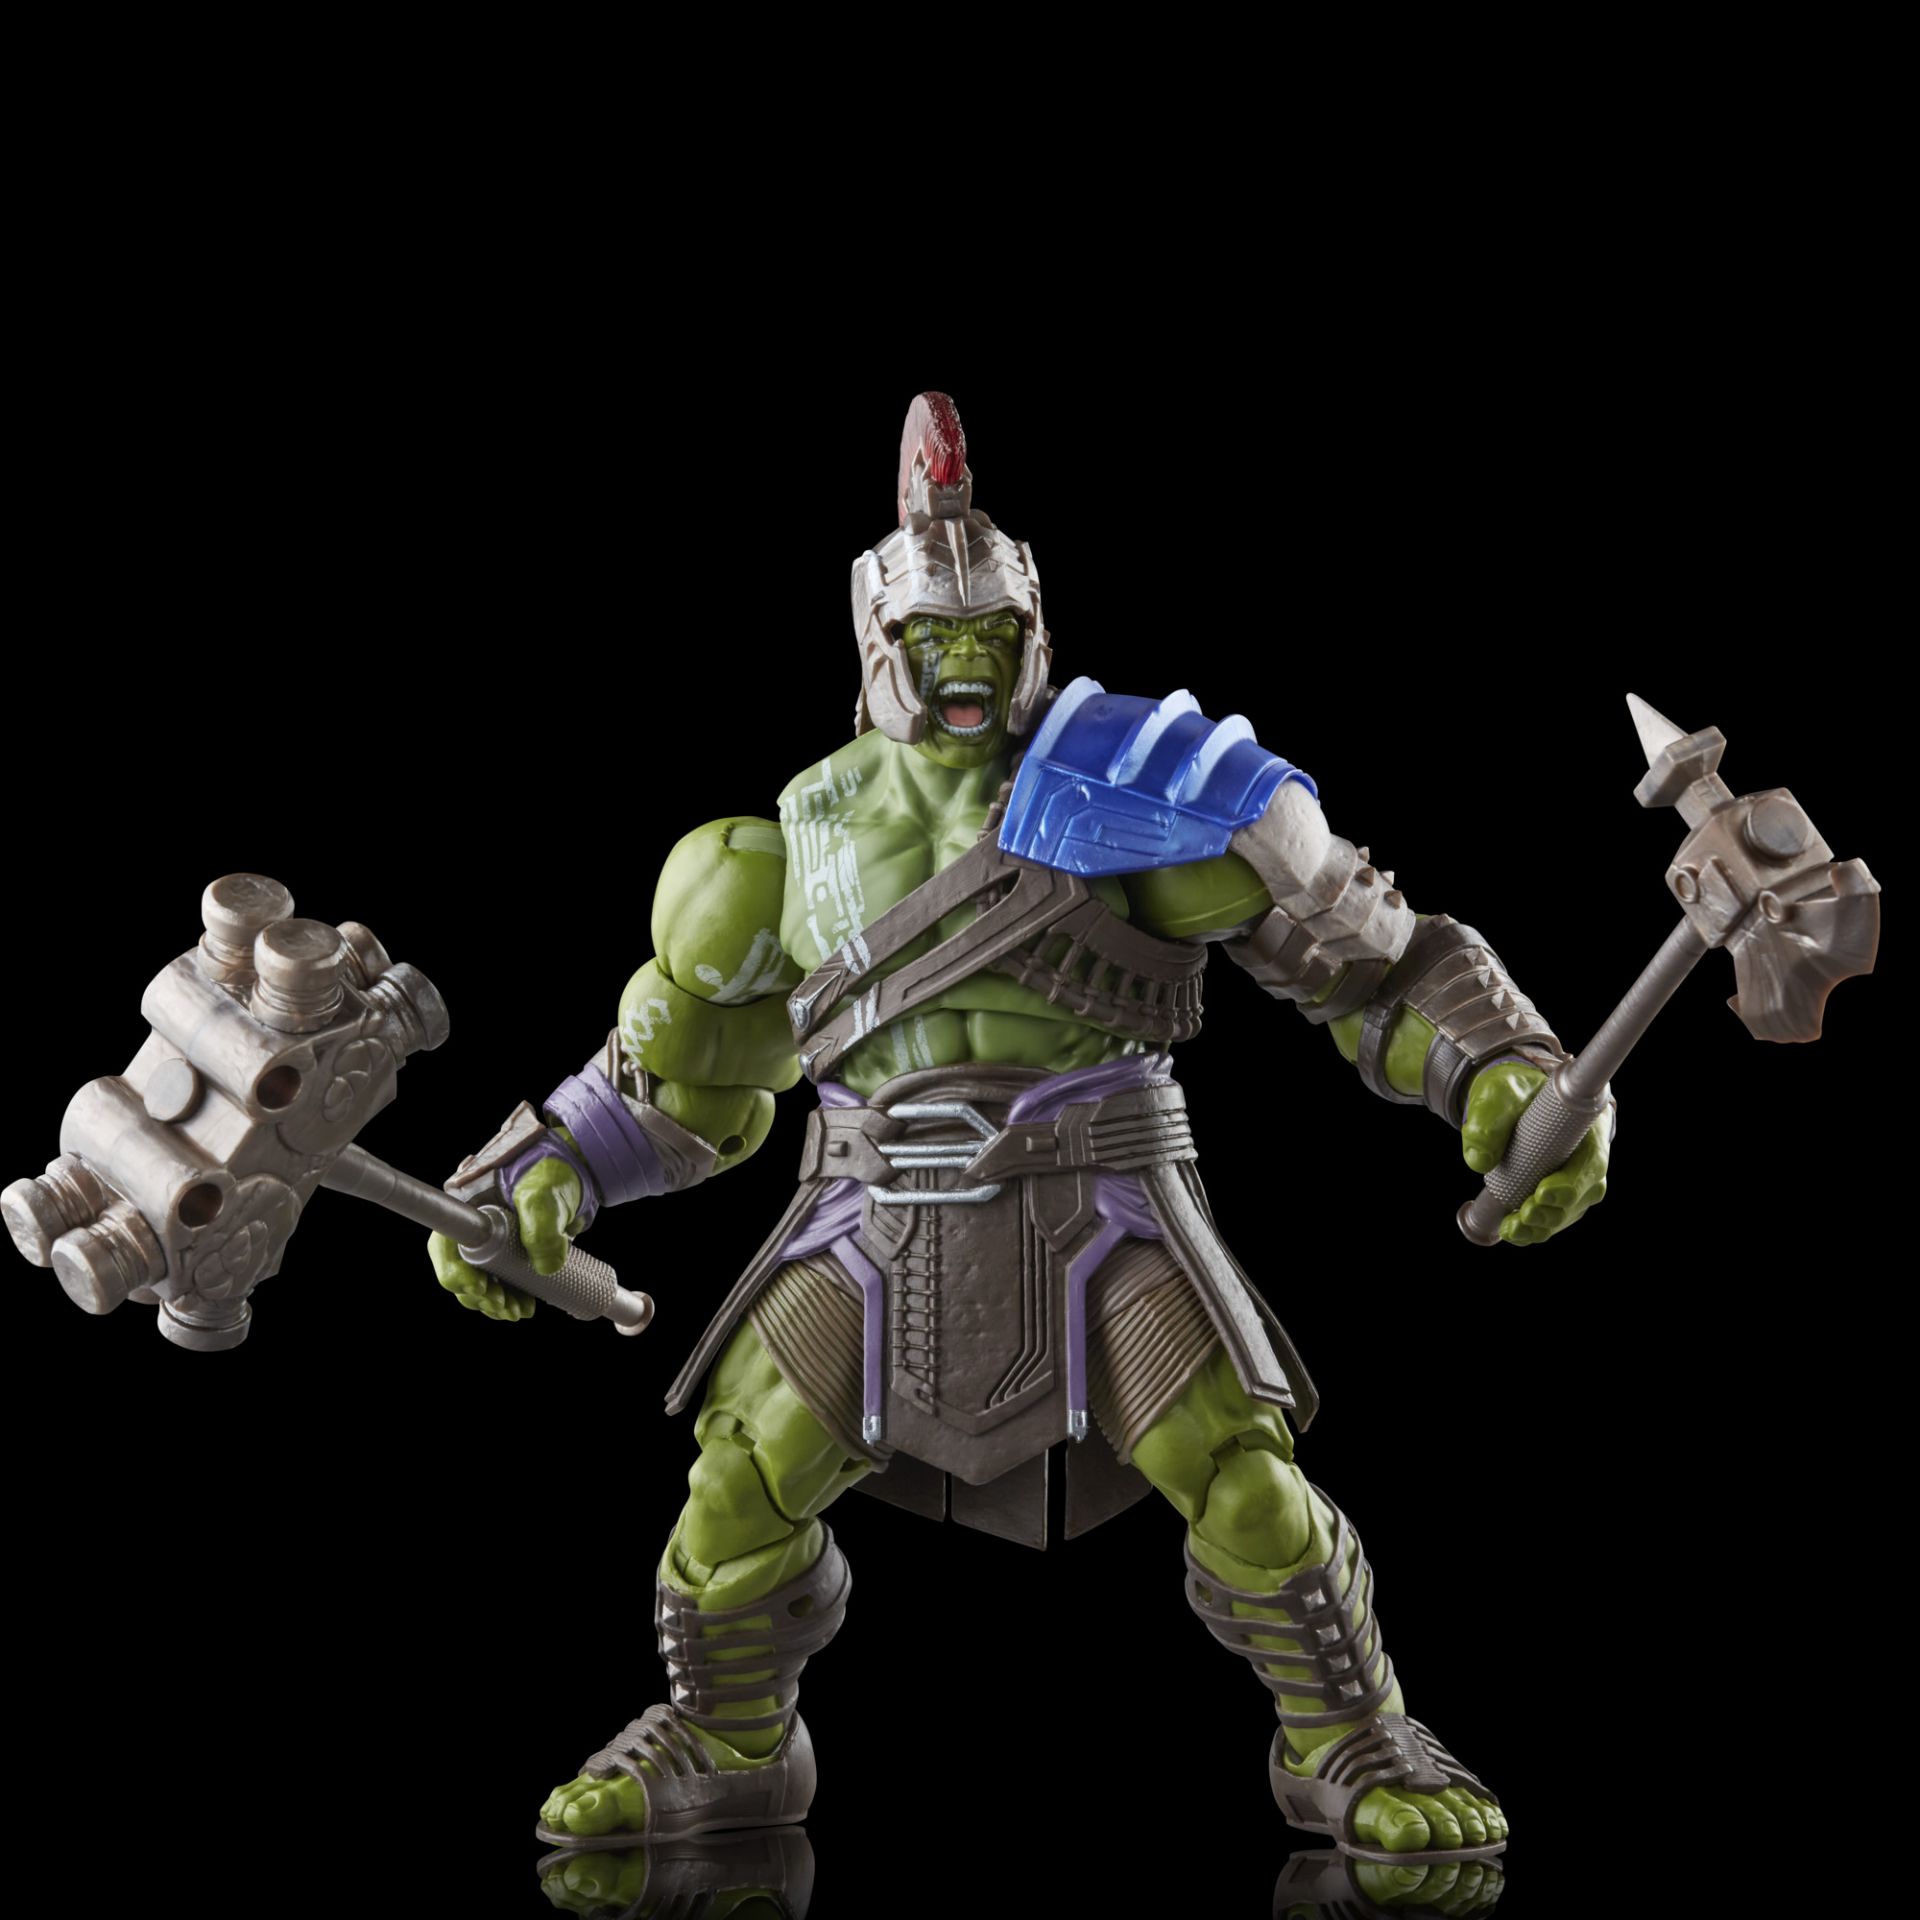 Marvel Legends Thor Ragnarok Figures Series Up for Order! - Marvel Toy News